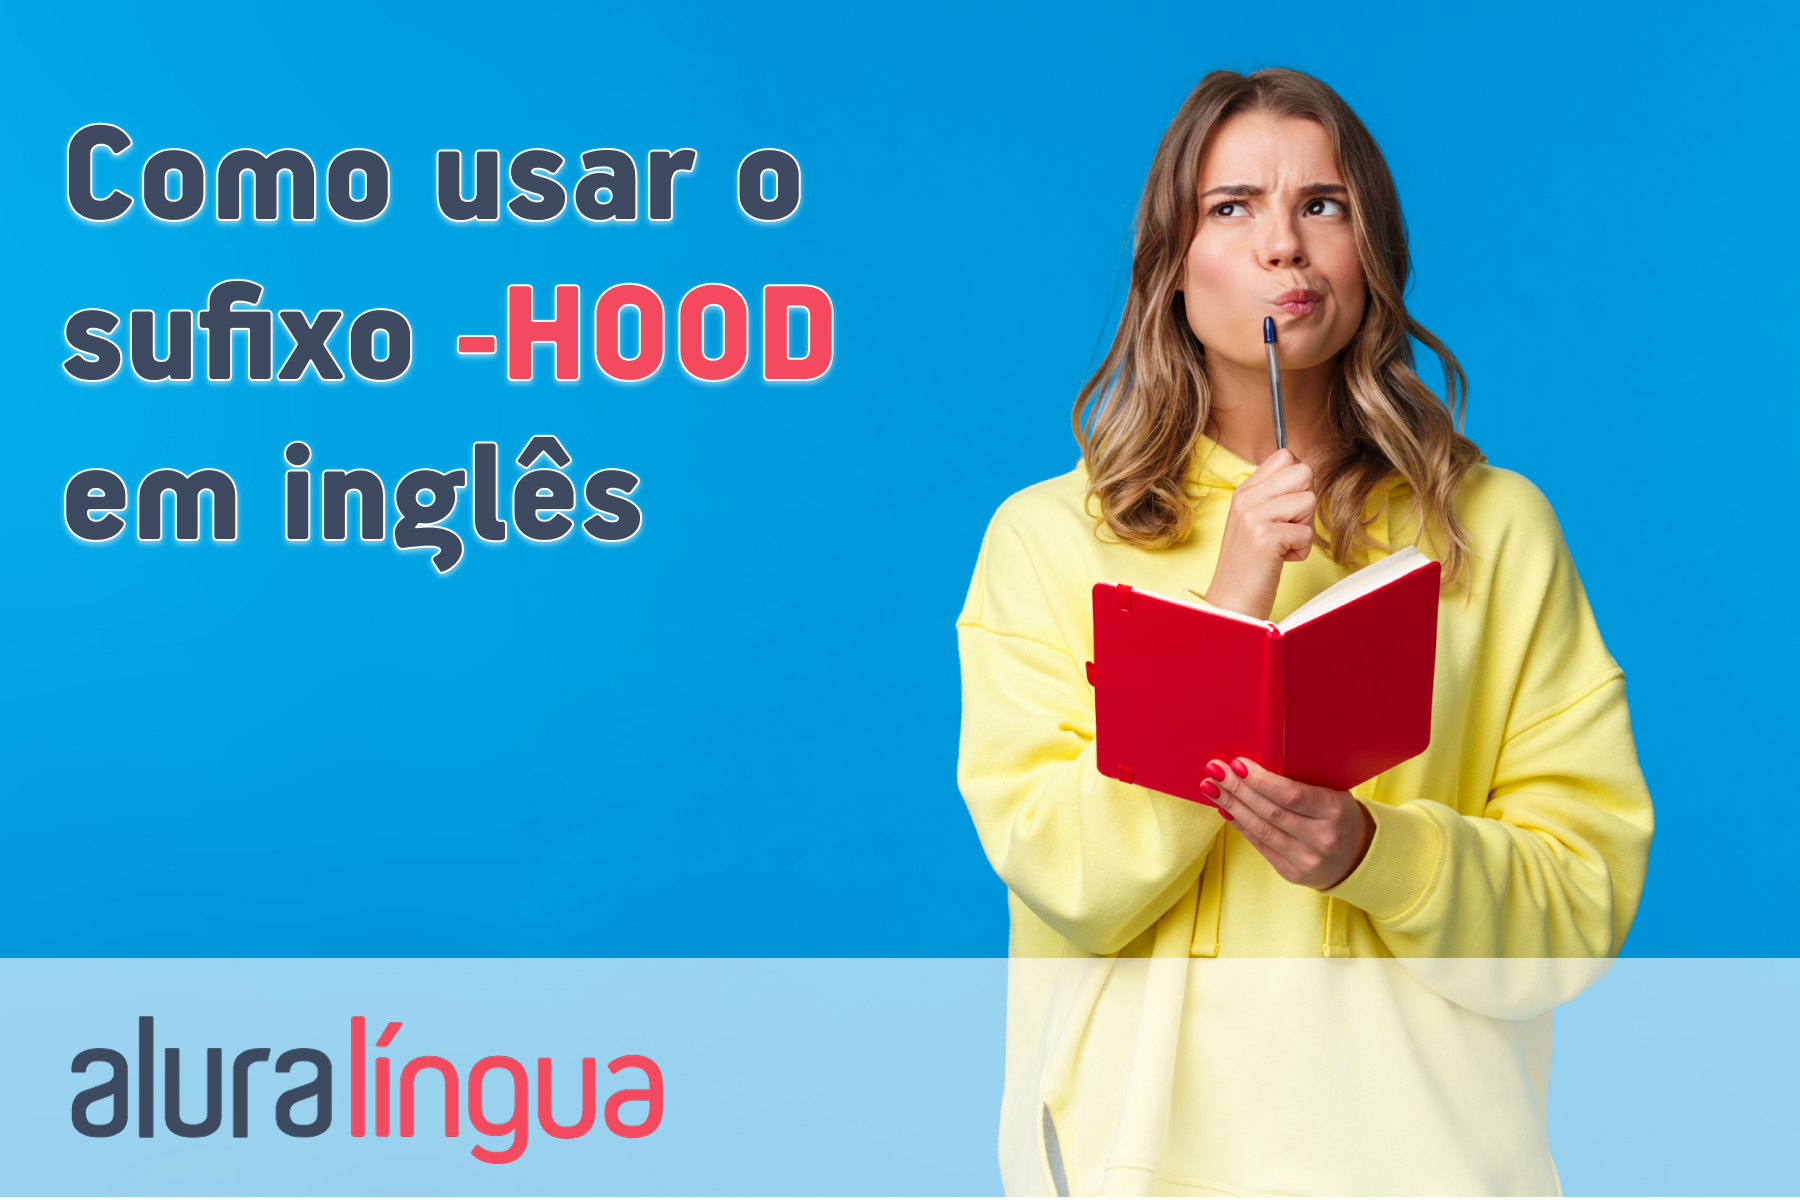 Como usar o sufixo hood em inglês #inset